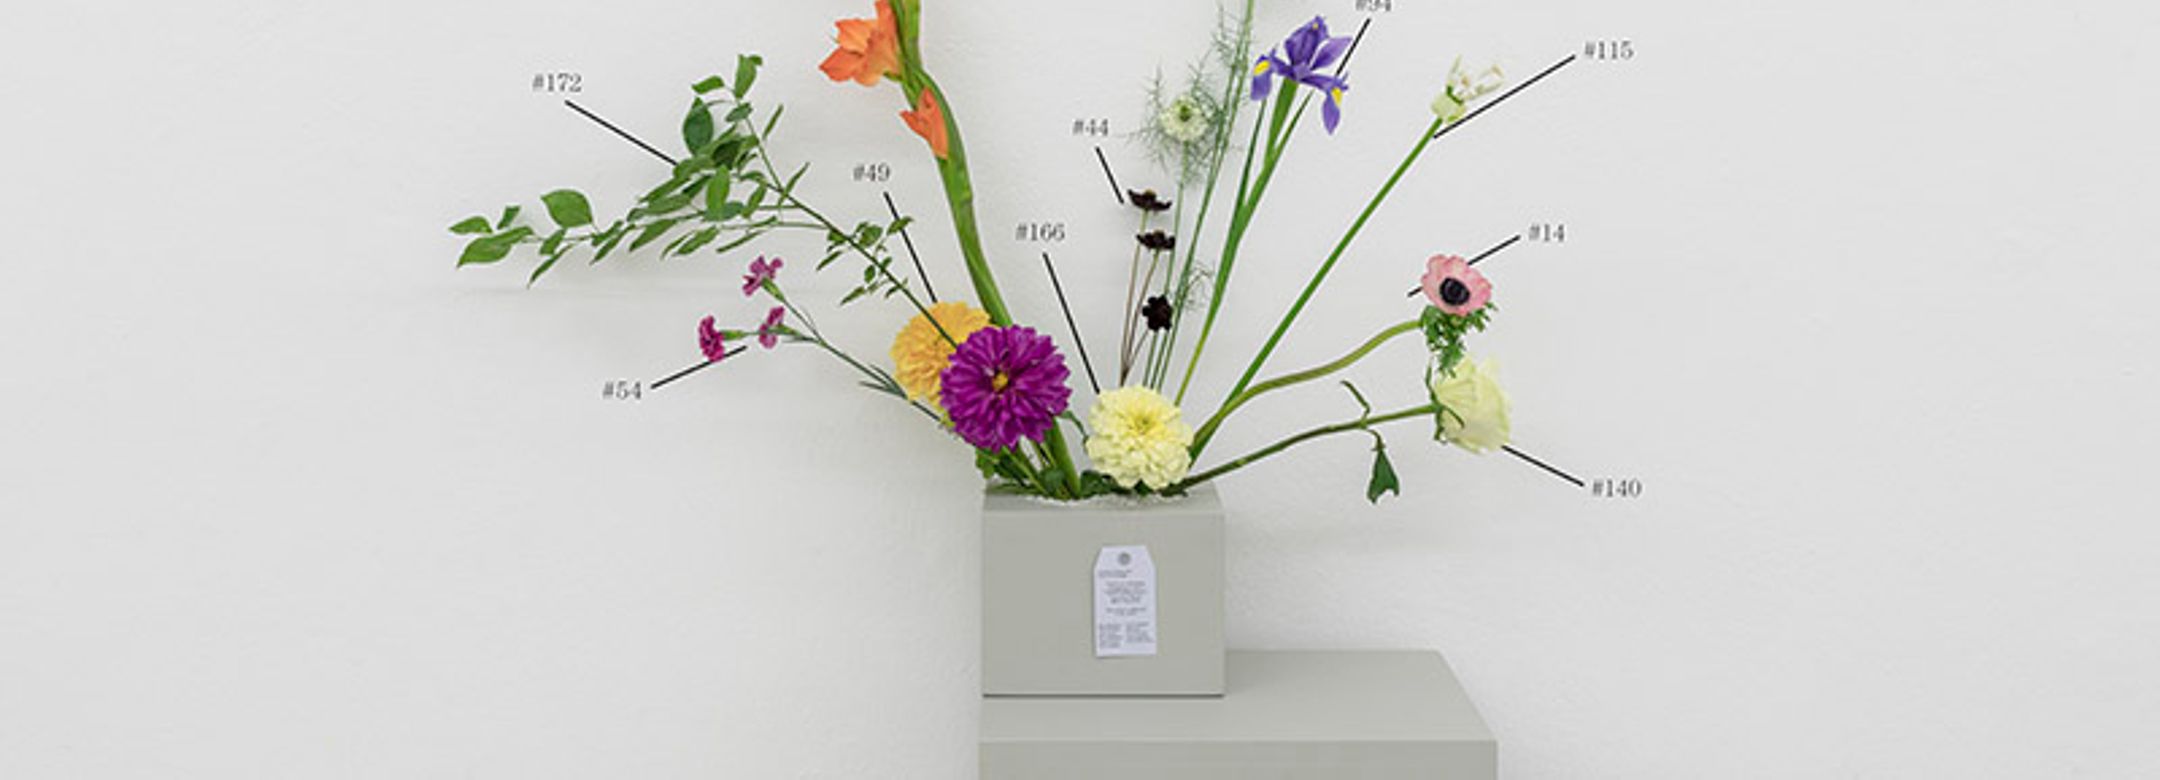 Natalie Czech - A critic’s bouquet by Övül O. Durmusoglu for Flowers are Documents – Arrangement I, 2017, foto GuadagninI e Sorvillo ©ar/ge kunst.